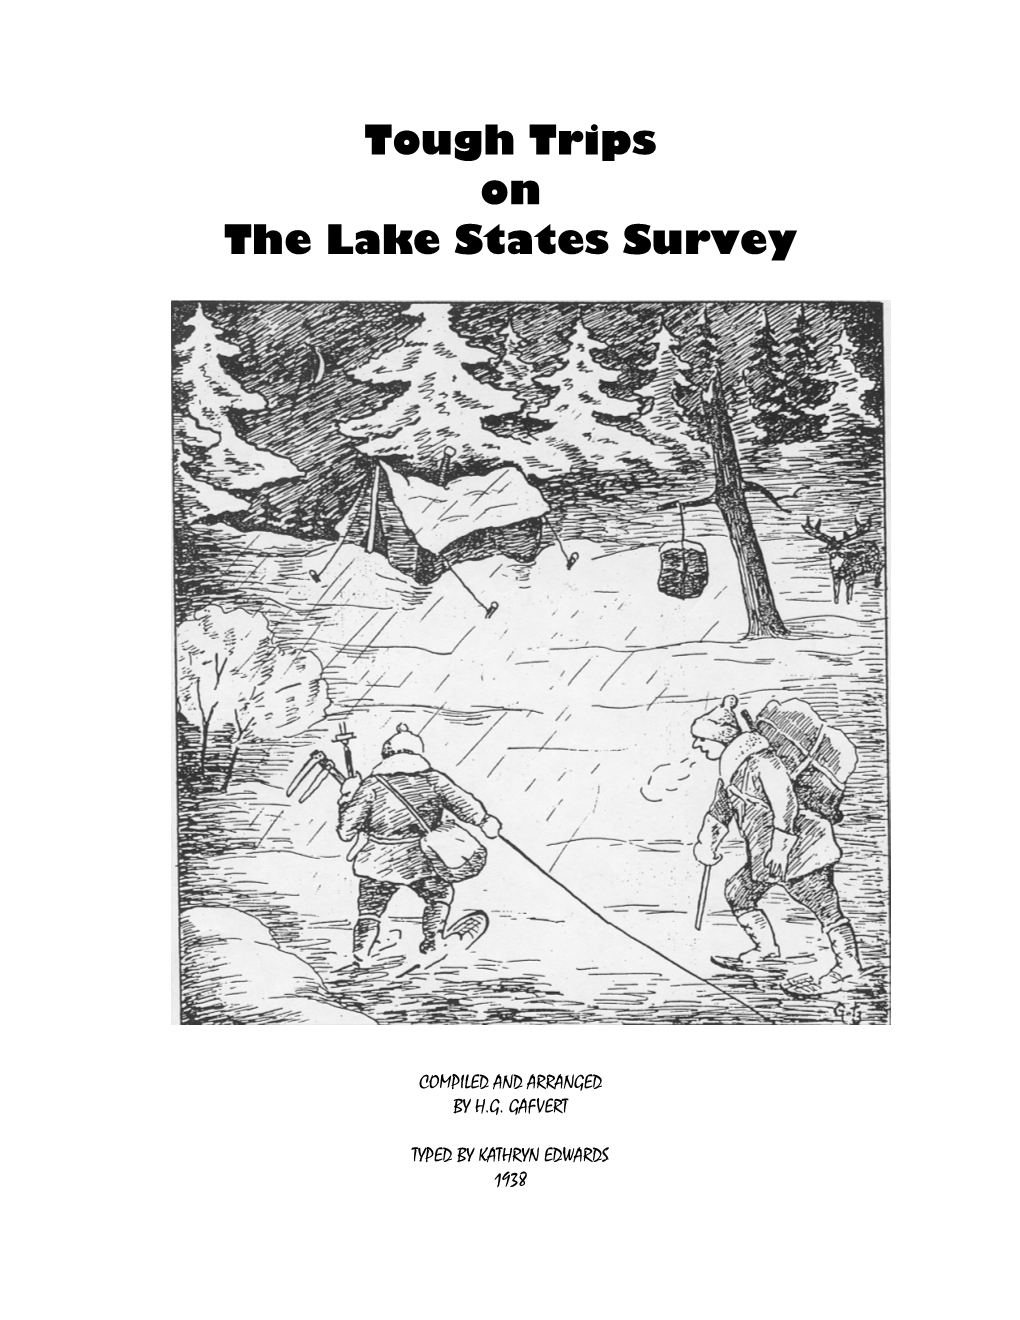 1937 Lake States Survey Stories